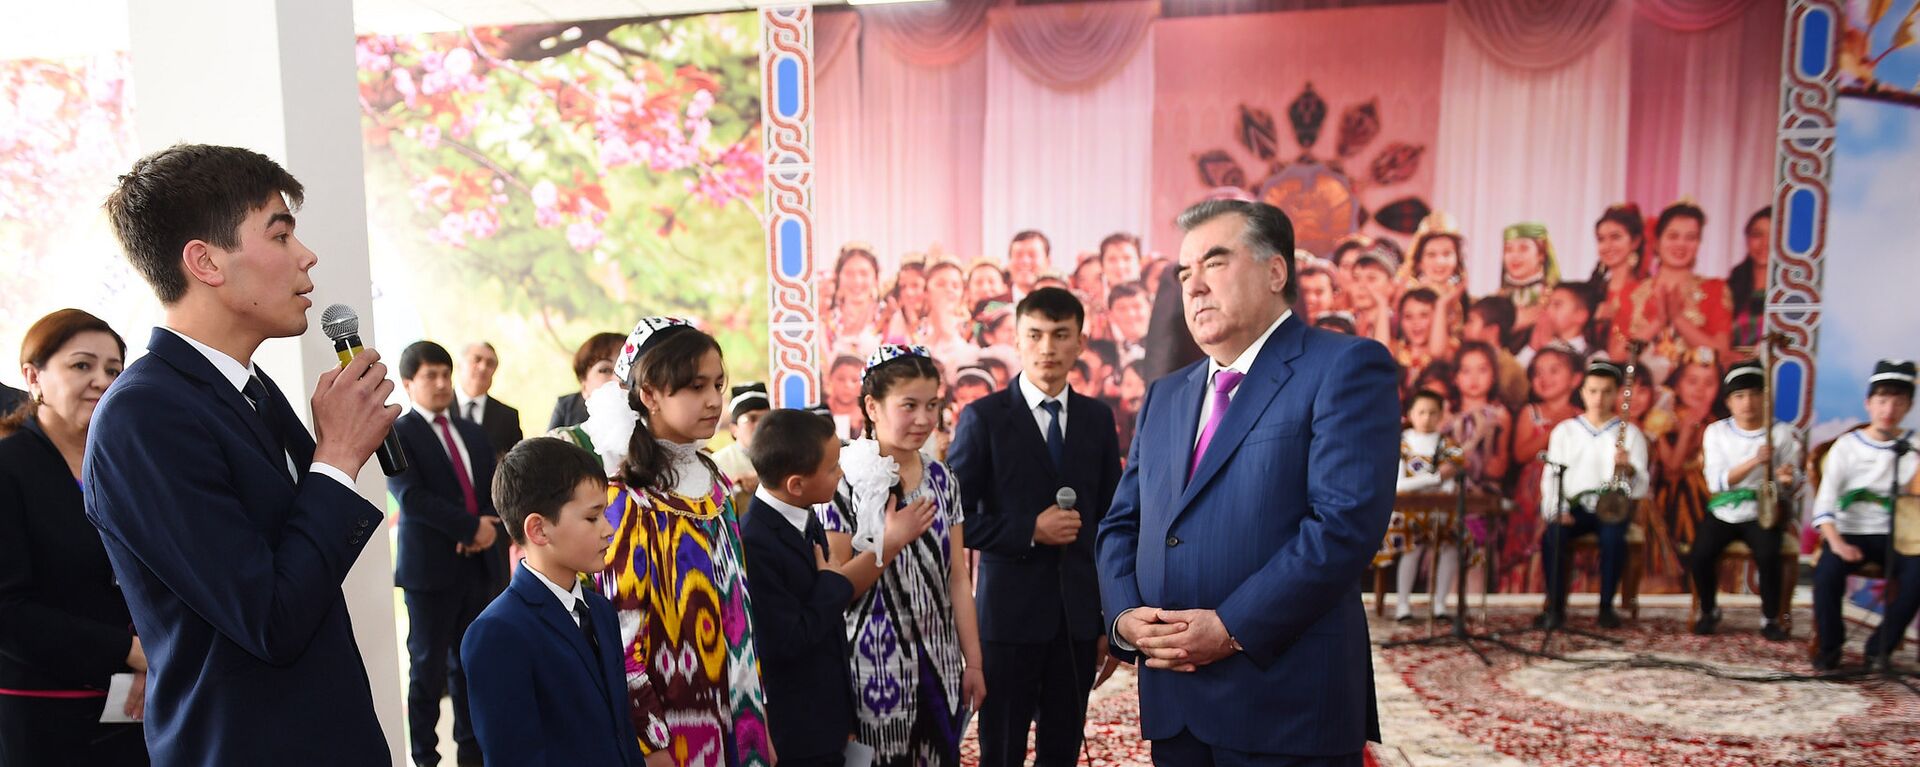 Эмомали Рахмон на встрече со школьниками - Sputnik Таджикистан, 1920, 21.05.2021